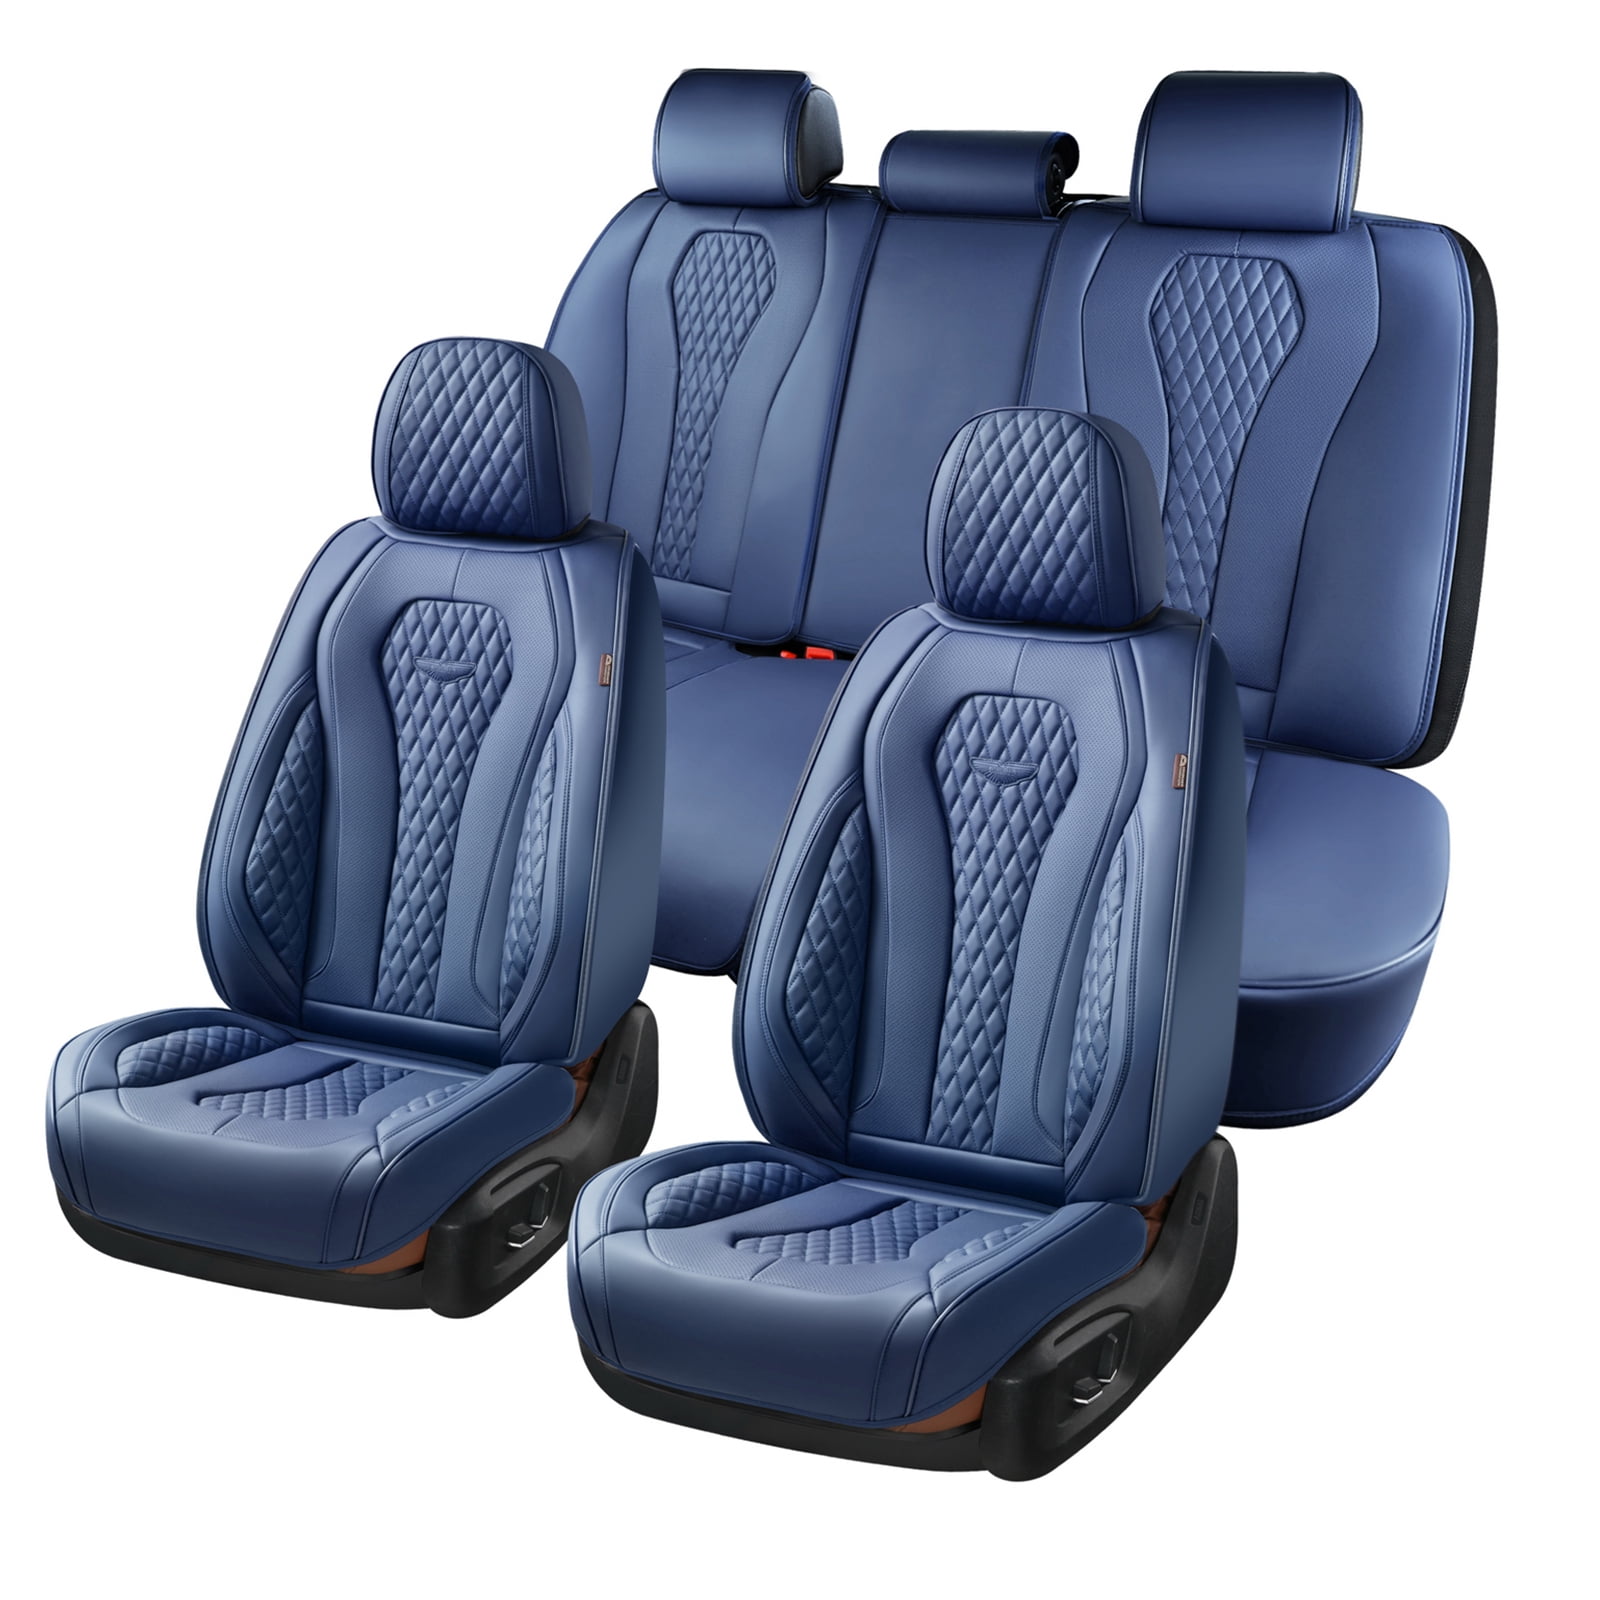 Coverado 5 Seats Blue Car Seat Covers Full Set, Premium